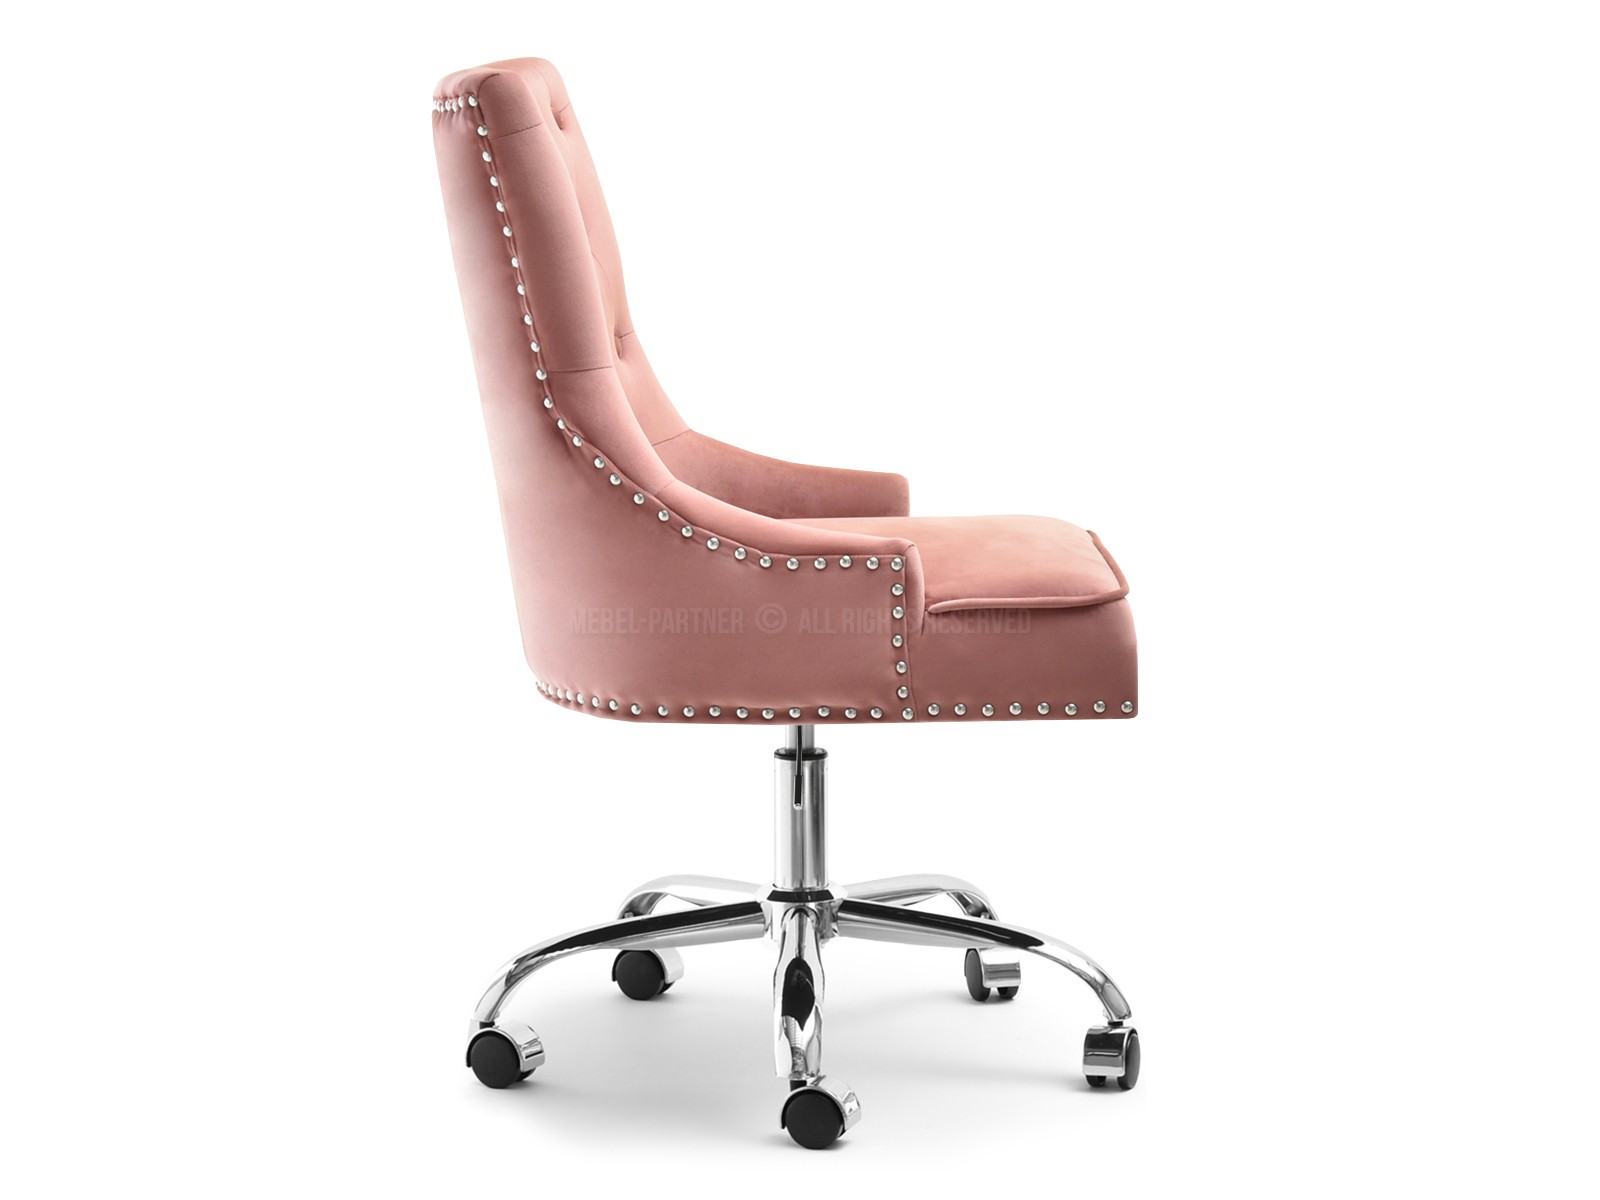 Fotel obrotowy glamour SORIA PUDROWY z pinezkamii pikowaniem - nowoczesna forma